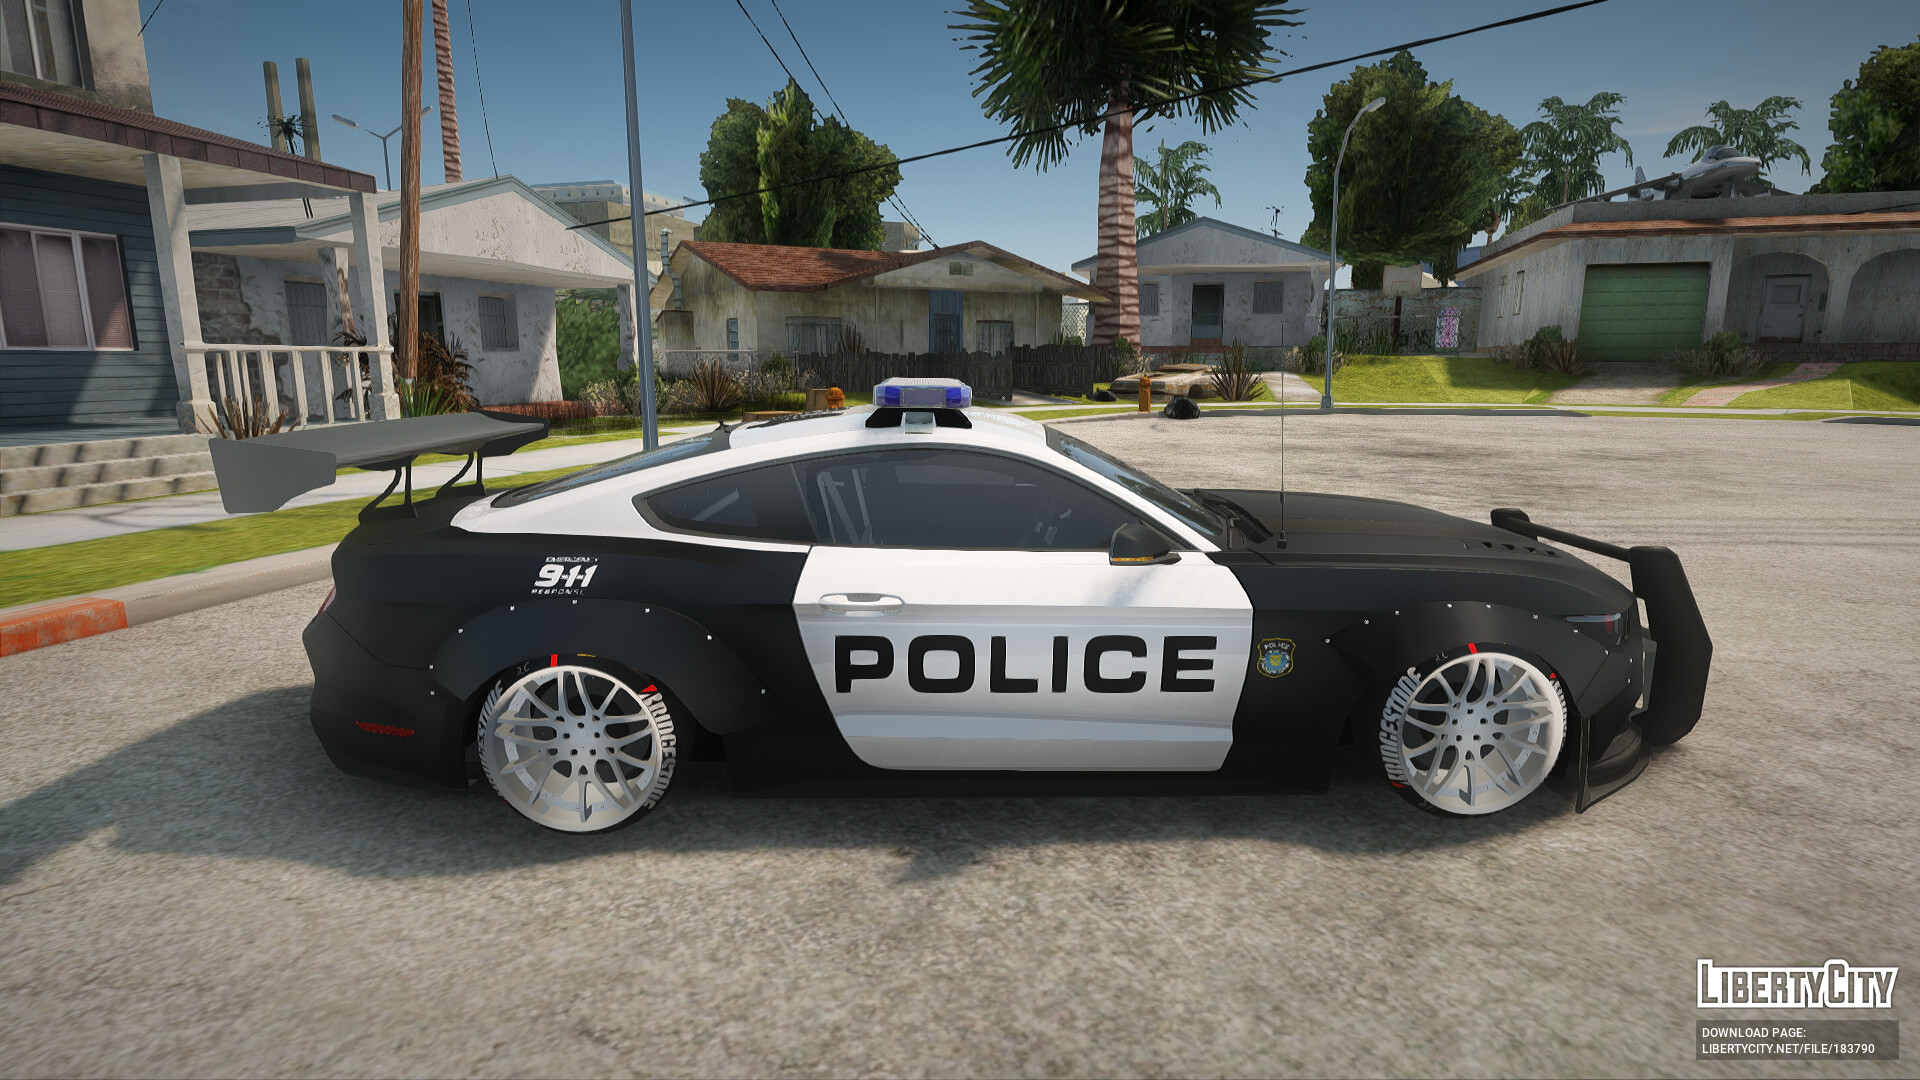 Код гта полицейская машина. Игру про полицейский Форд Мустанг. Форд ДЖИТИ полиции.